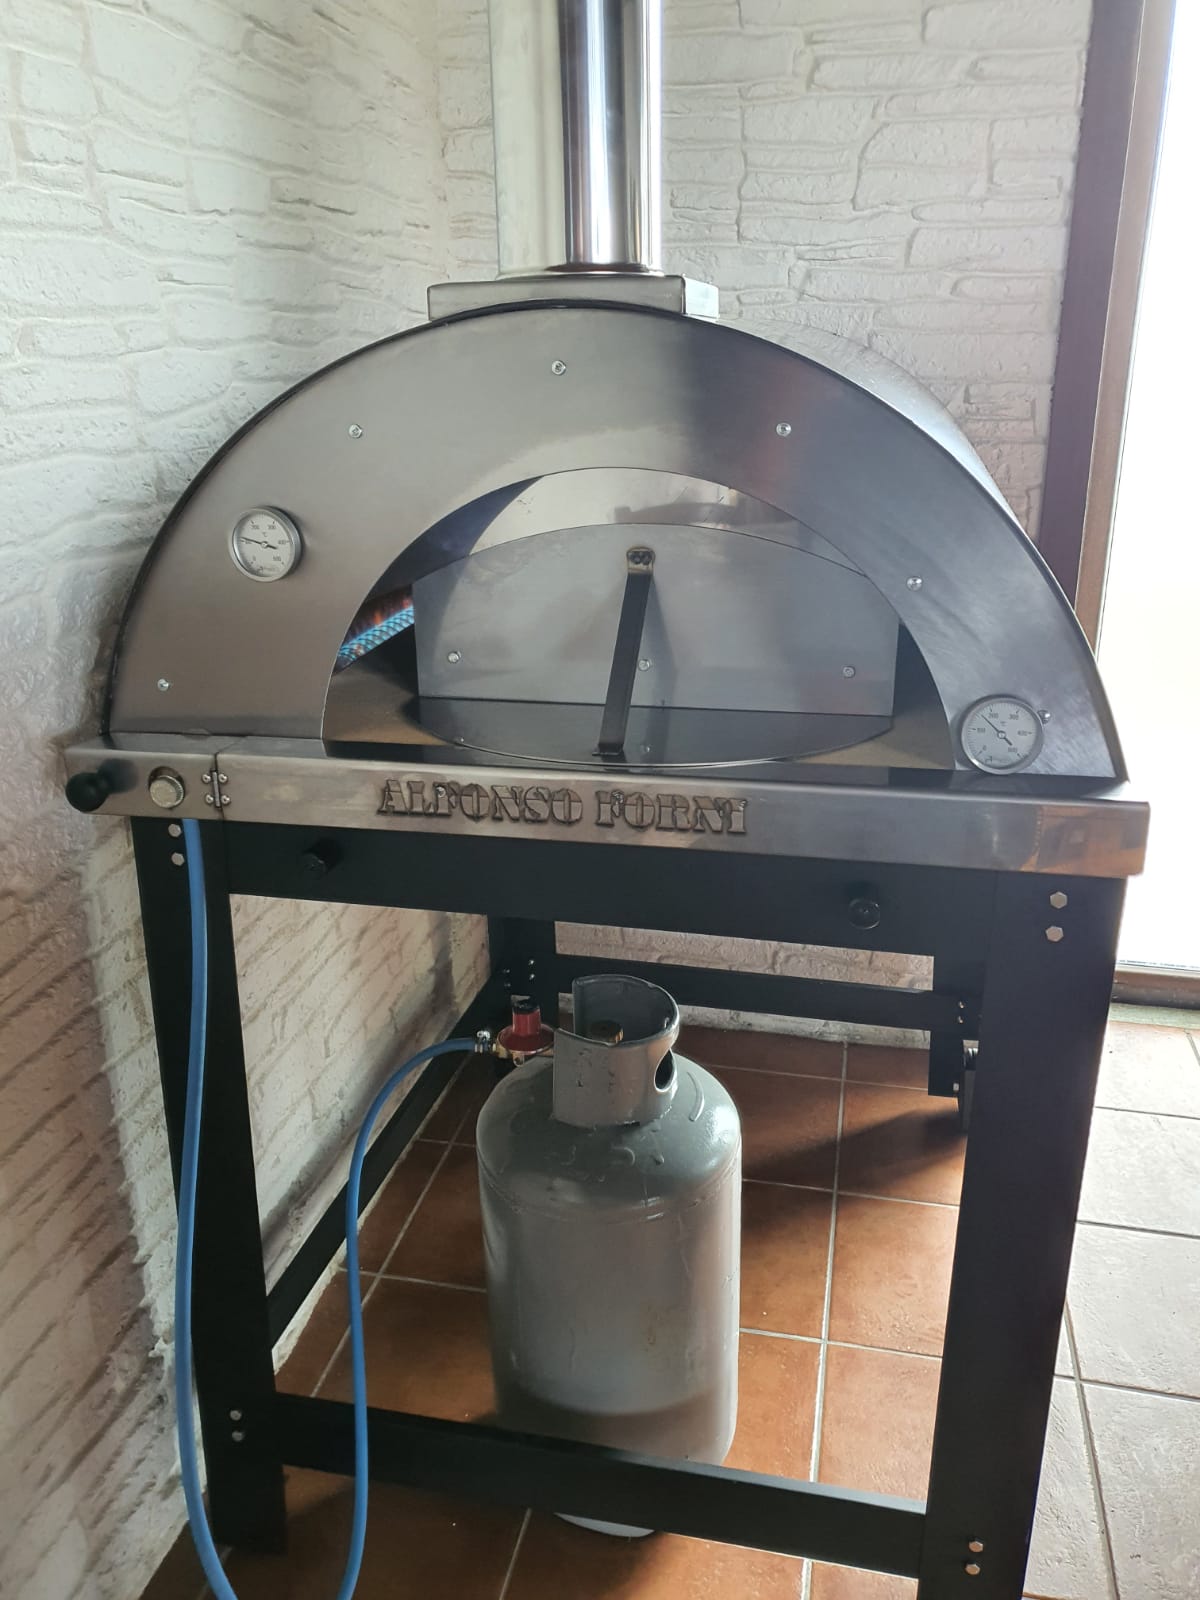 Alfonso 4 pizze Ibrido con carrello, forno a gas o a legna